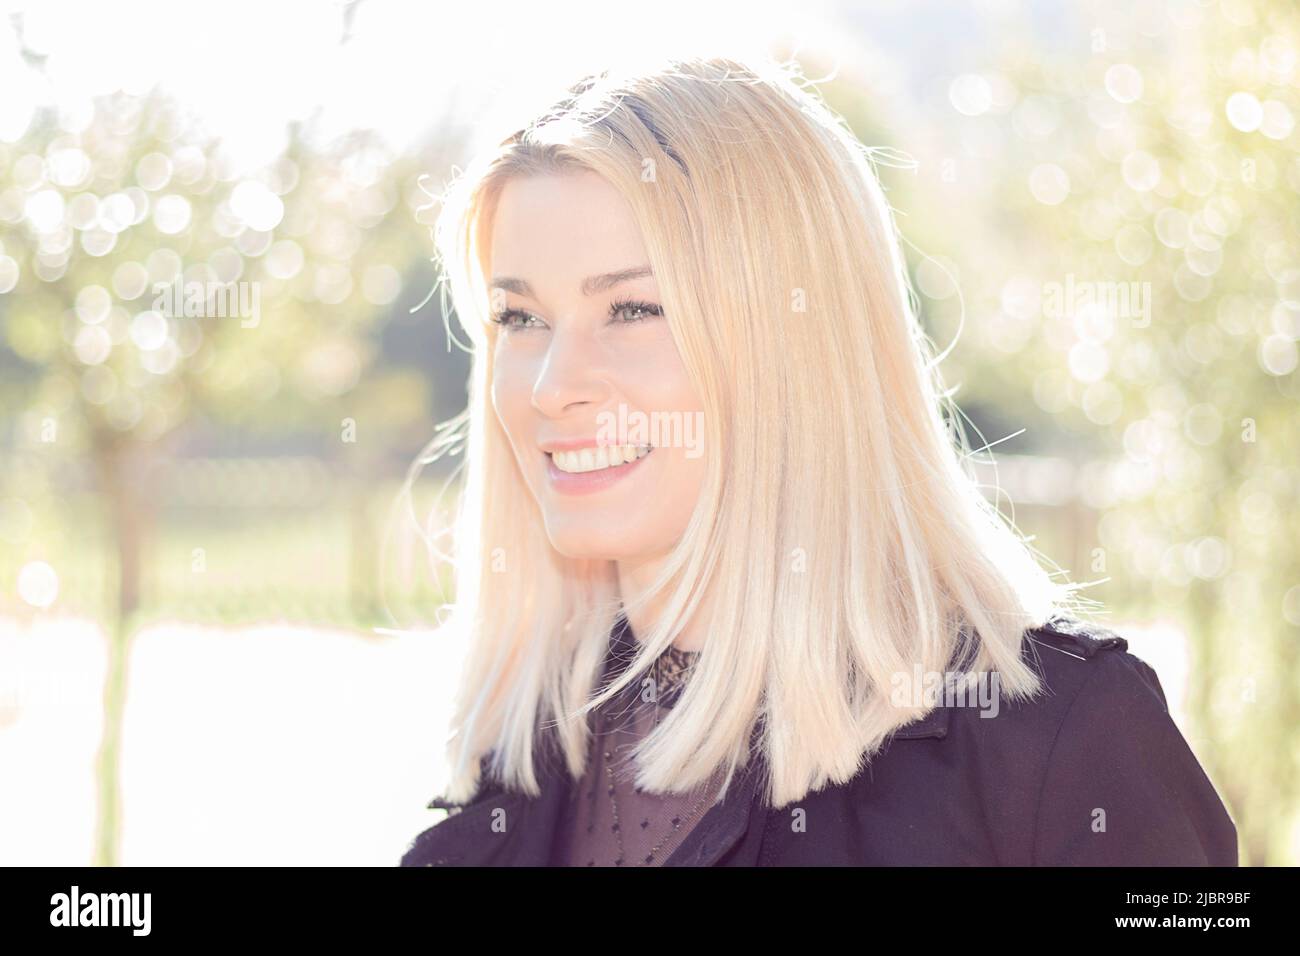 jolie femme blonde souriante dans un parc habillé de noir Banque D'Images